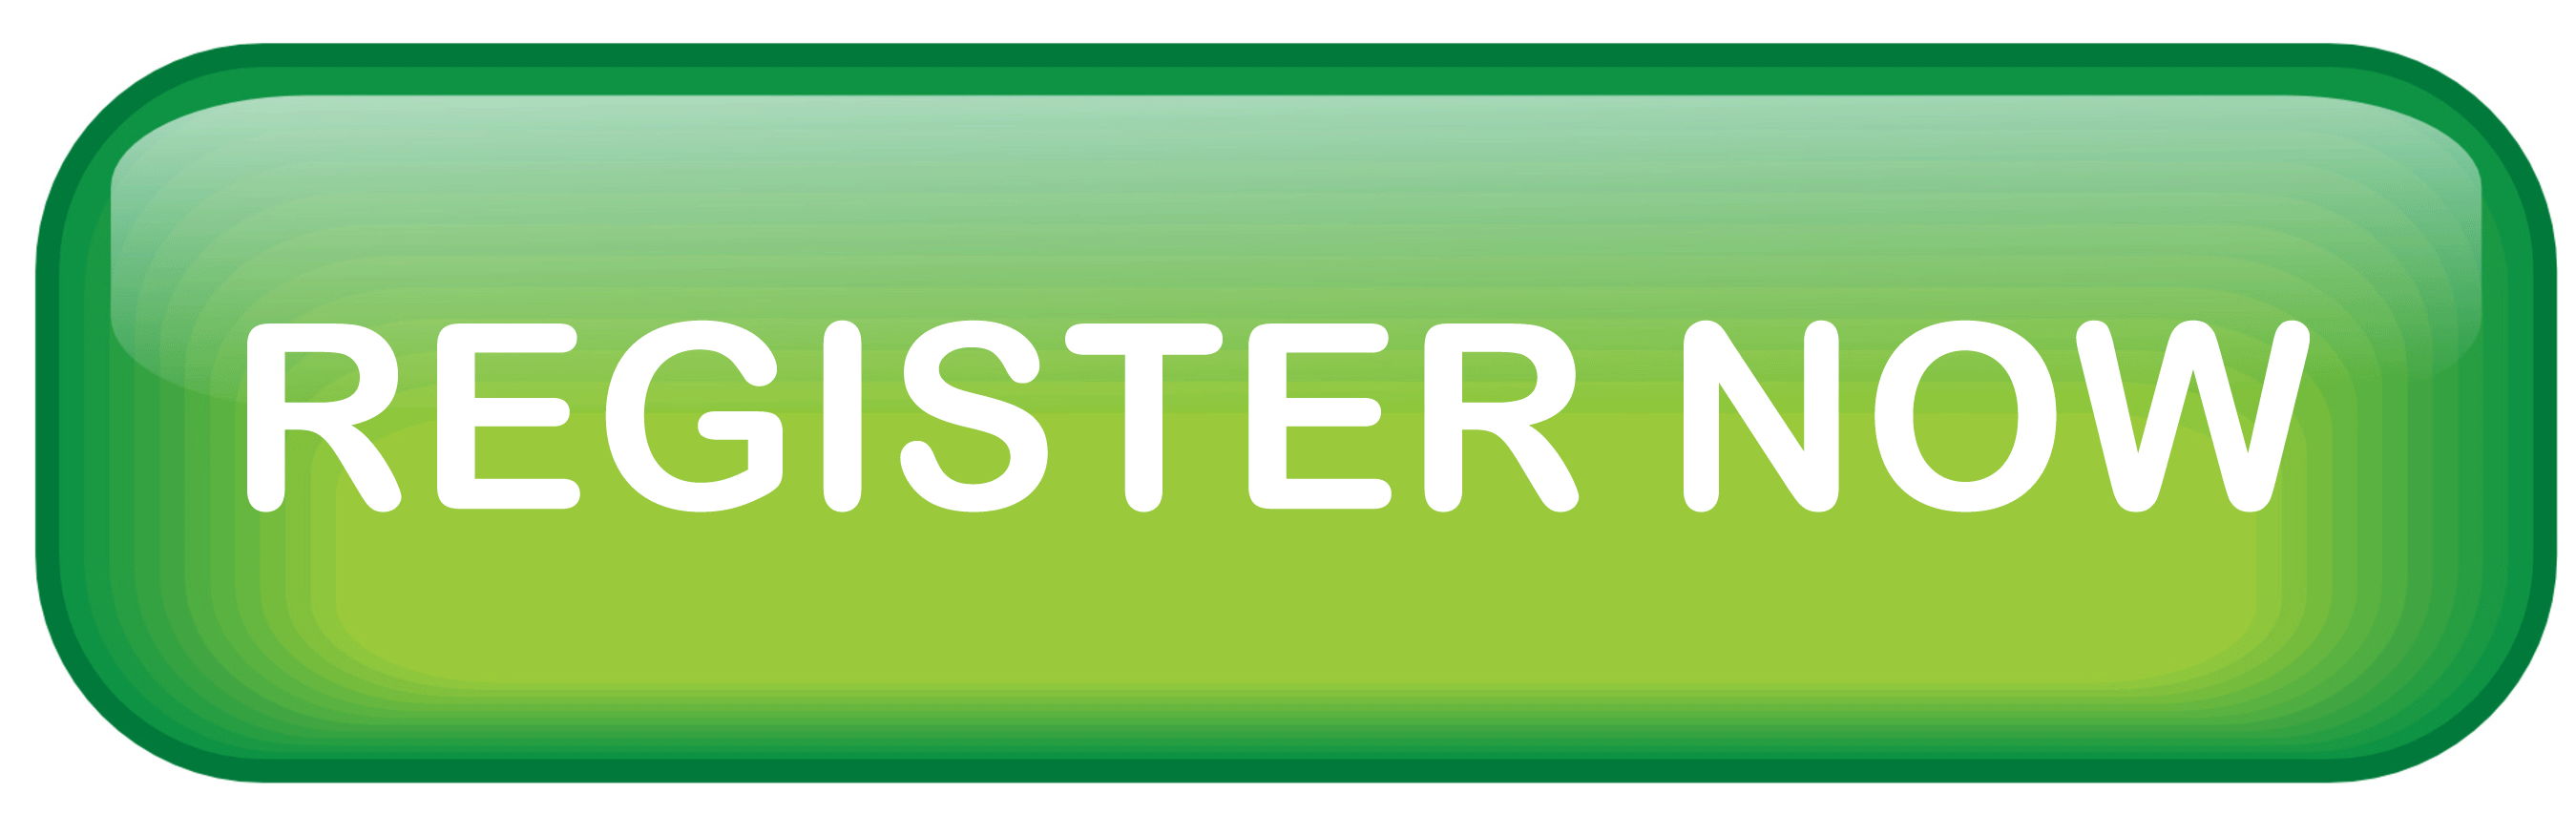 register now green